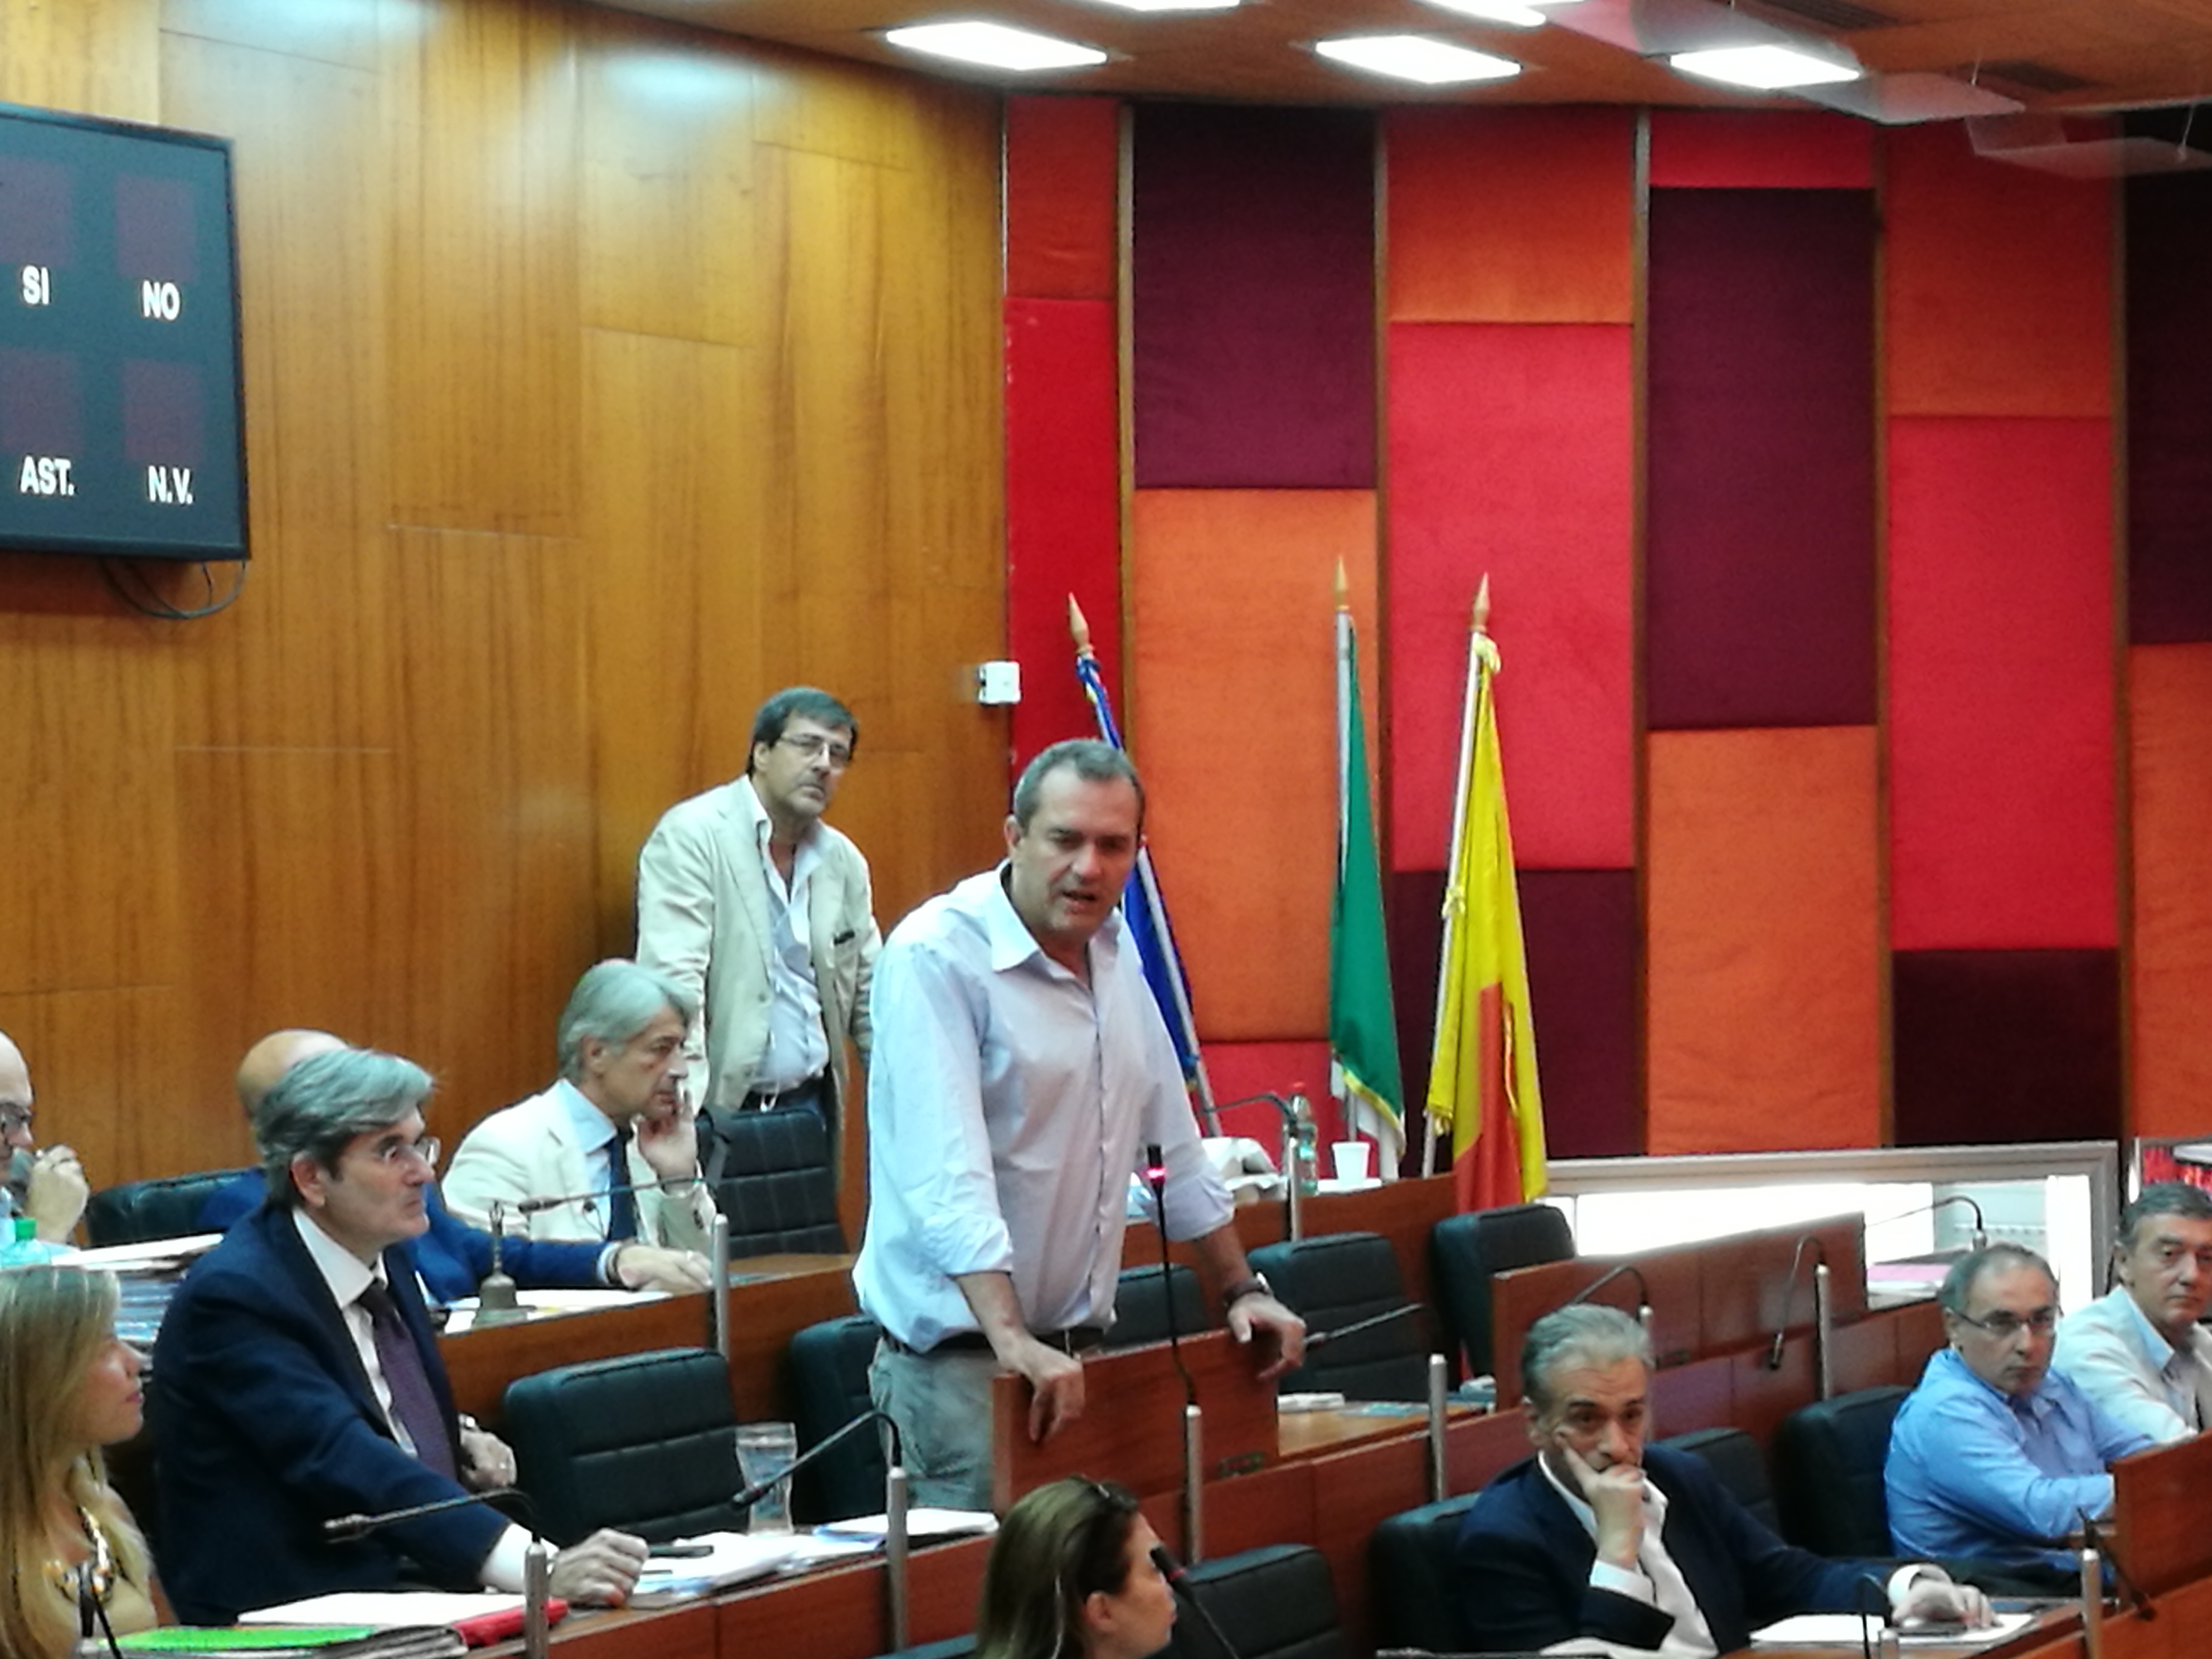 Il Consiglio comunale si è concluso con l'approvazione di tutte le delibere propedeutiche al Bilancio di previsione. Intervento conclusivo del sindaco Luigi de Magistris.